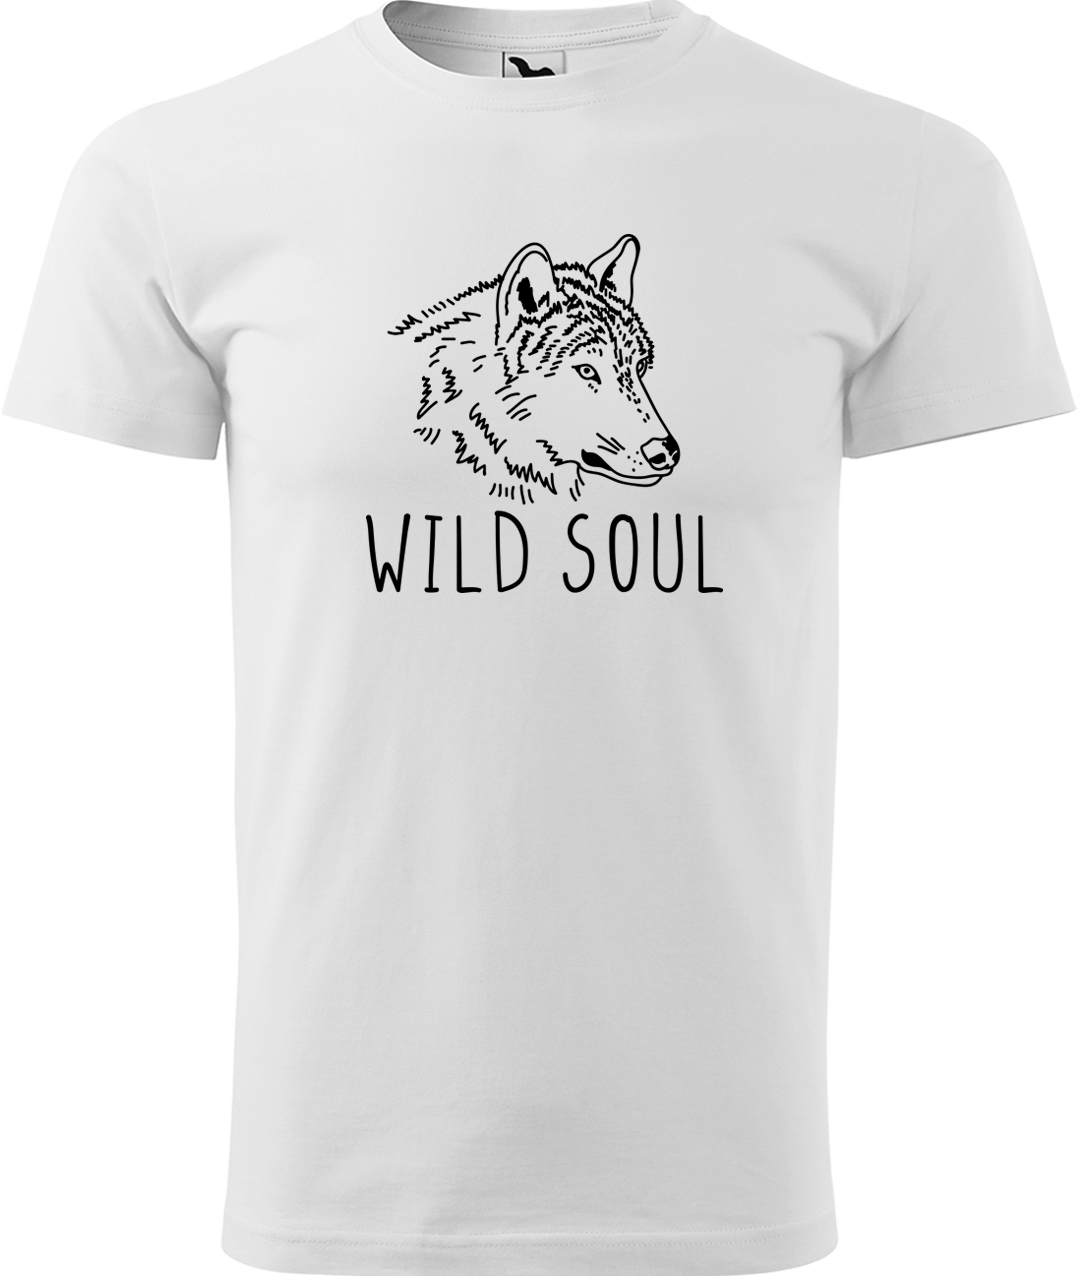 Pánské tričko s vlkem - Wild soul Velikost: 4XL, Barva: Bílá (00), Střih: pánský